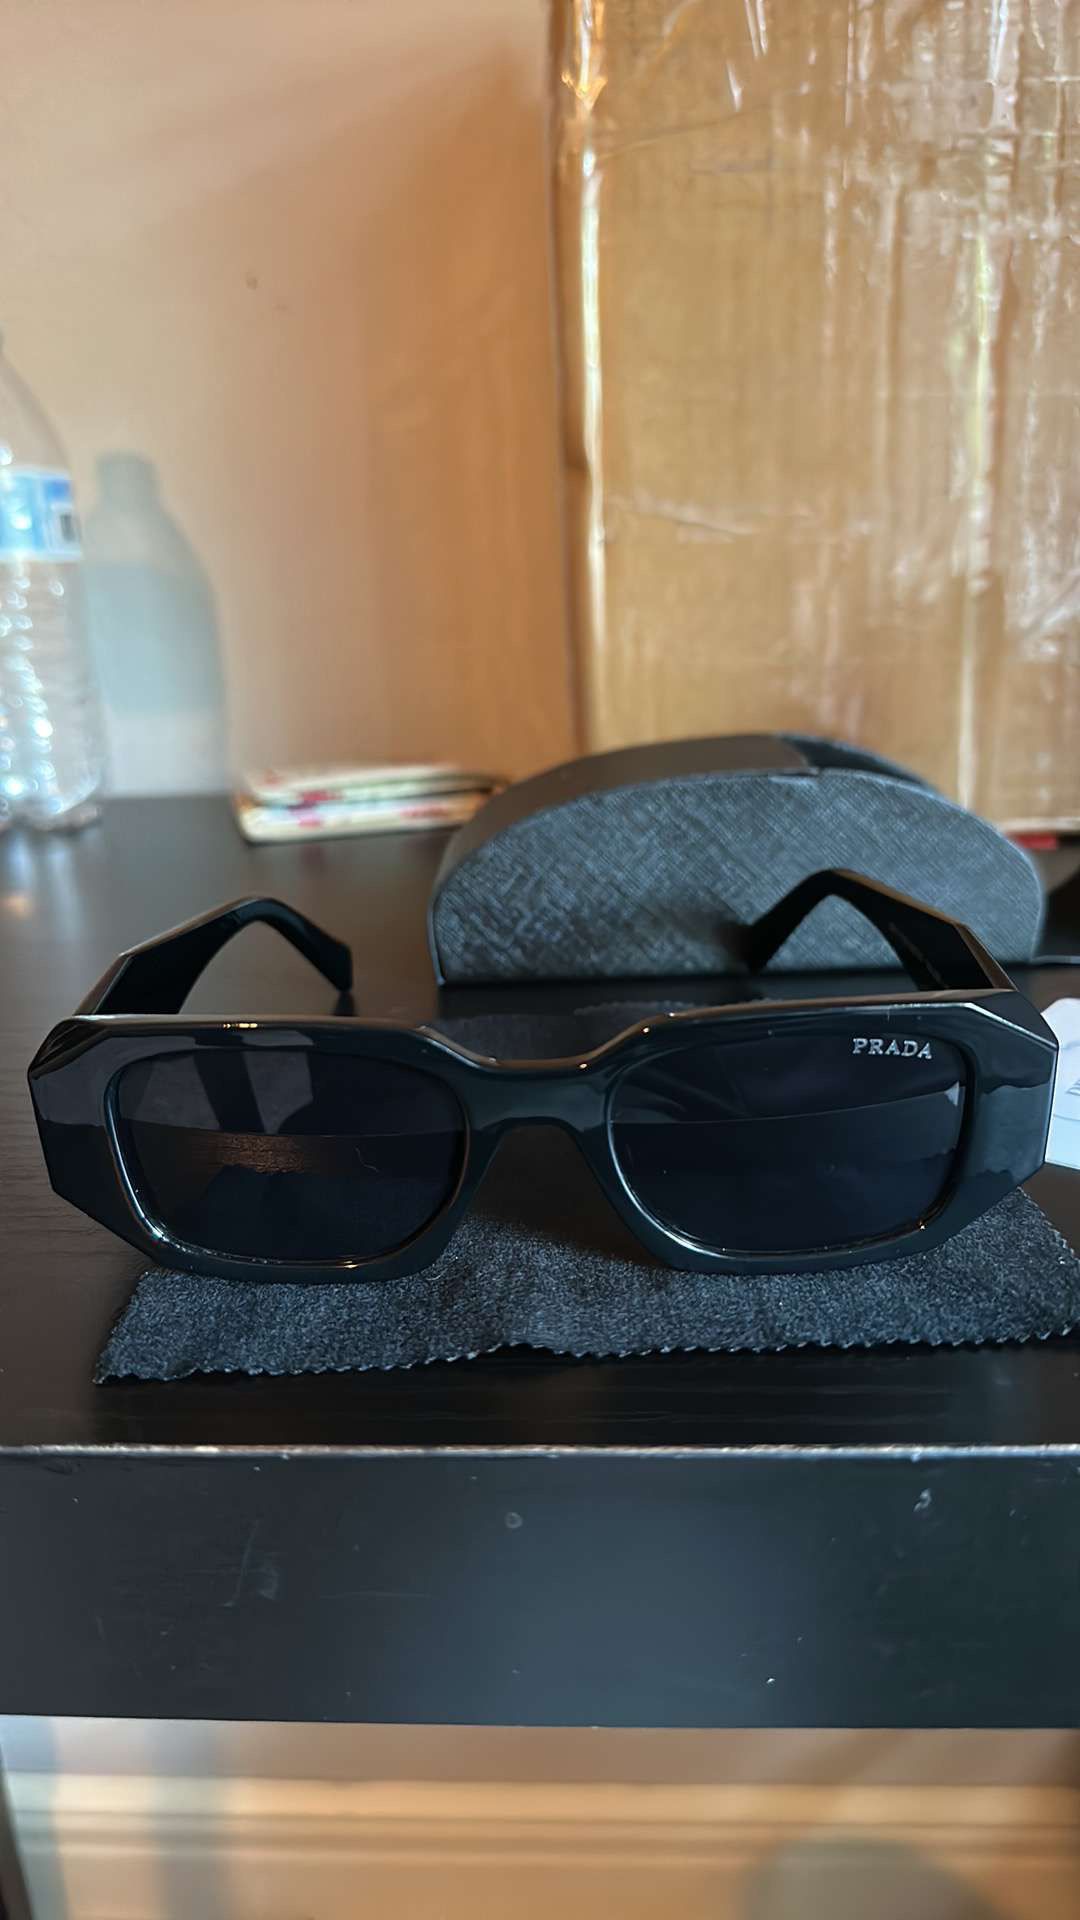 Prada Sunglasses 